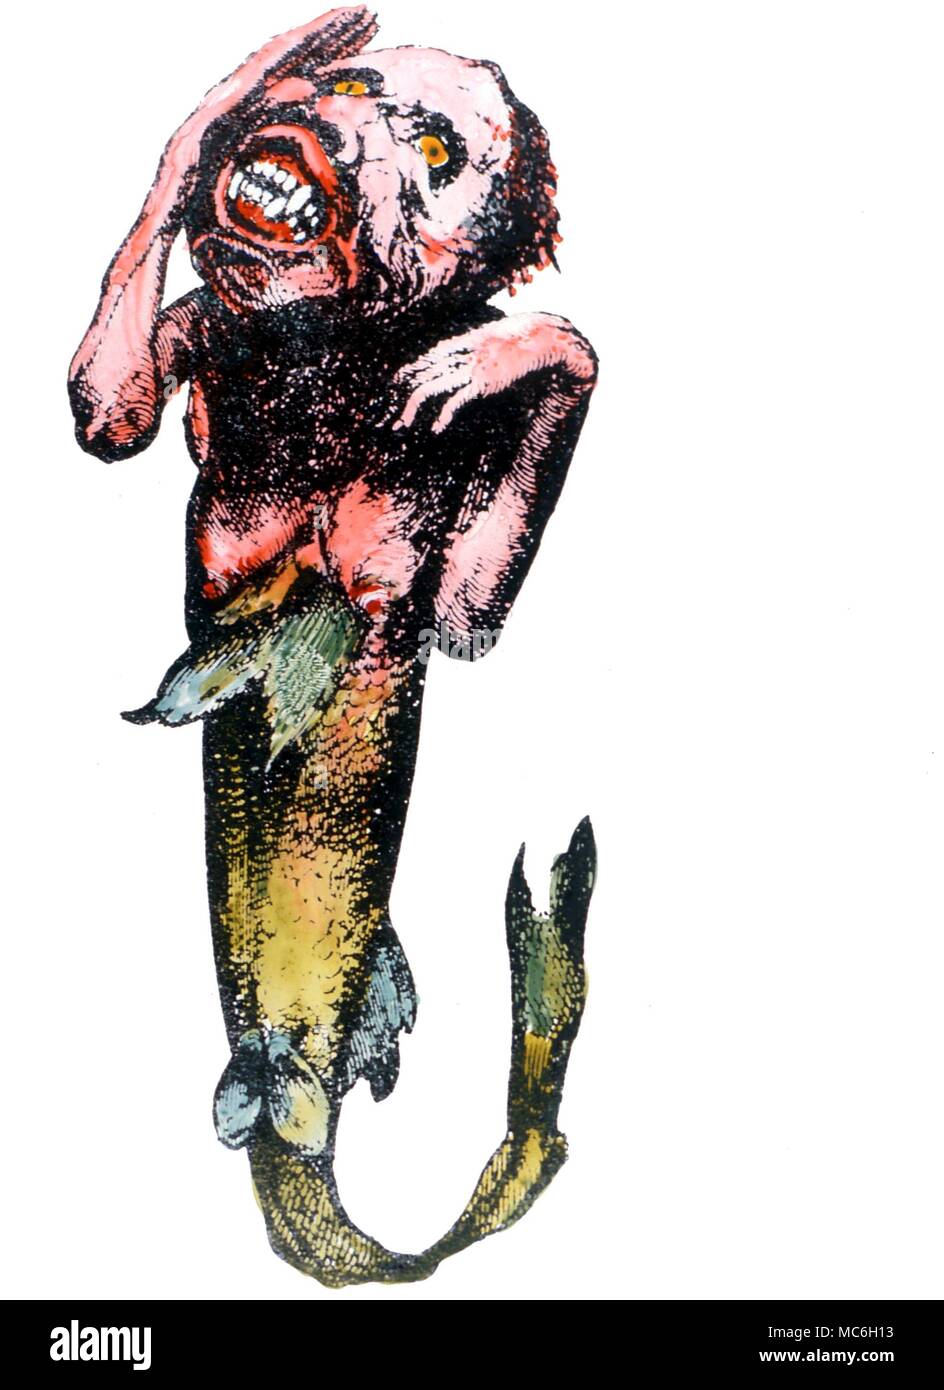 Des monstres. Clyde mcphatter - probablement faite à partir d'une queue de poisson et une tête de singe - affiché dans le milieu du 19ème siècle par l'impresario, Hugo Banque D'Images